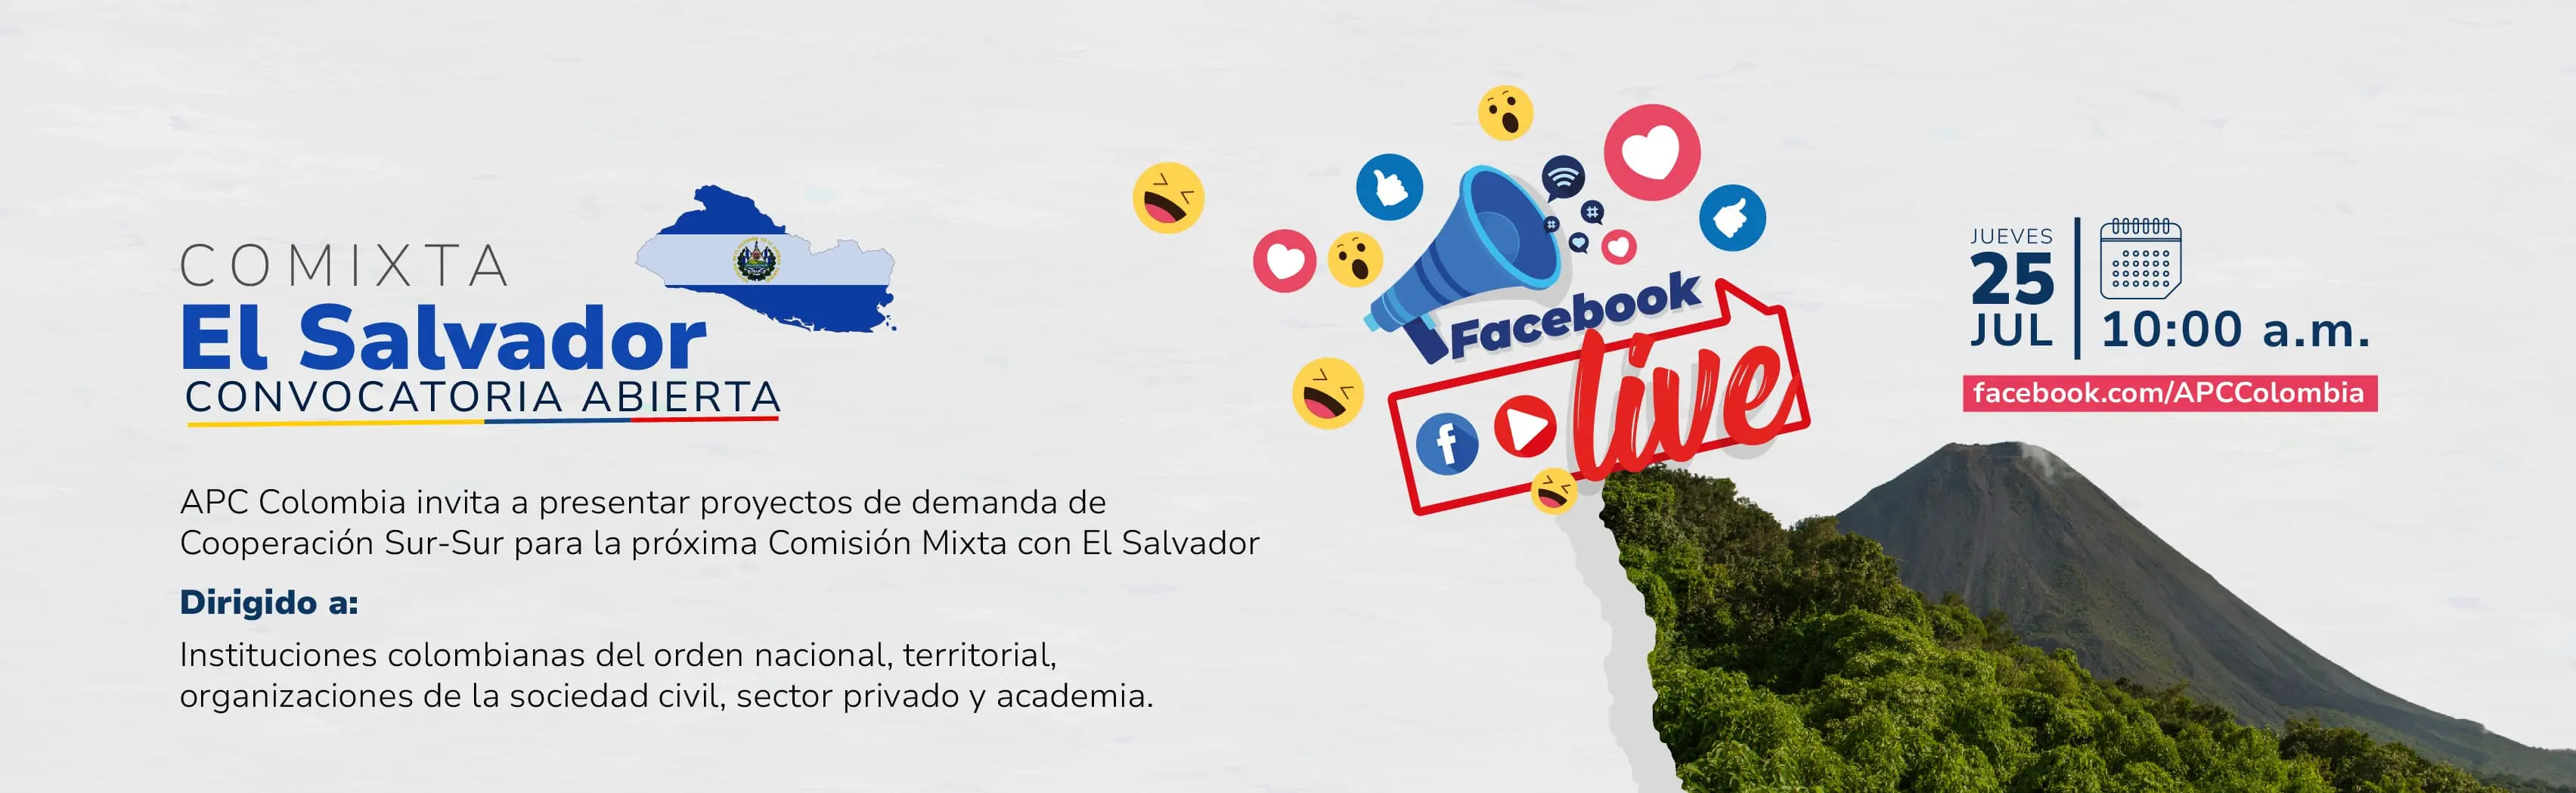 Facebook Live Convocatoria para presentar proyectos de demanda en la Comixta entre Colombia y El Salvador Facebook Live el 25 de julio a las diez de la mañana